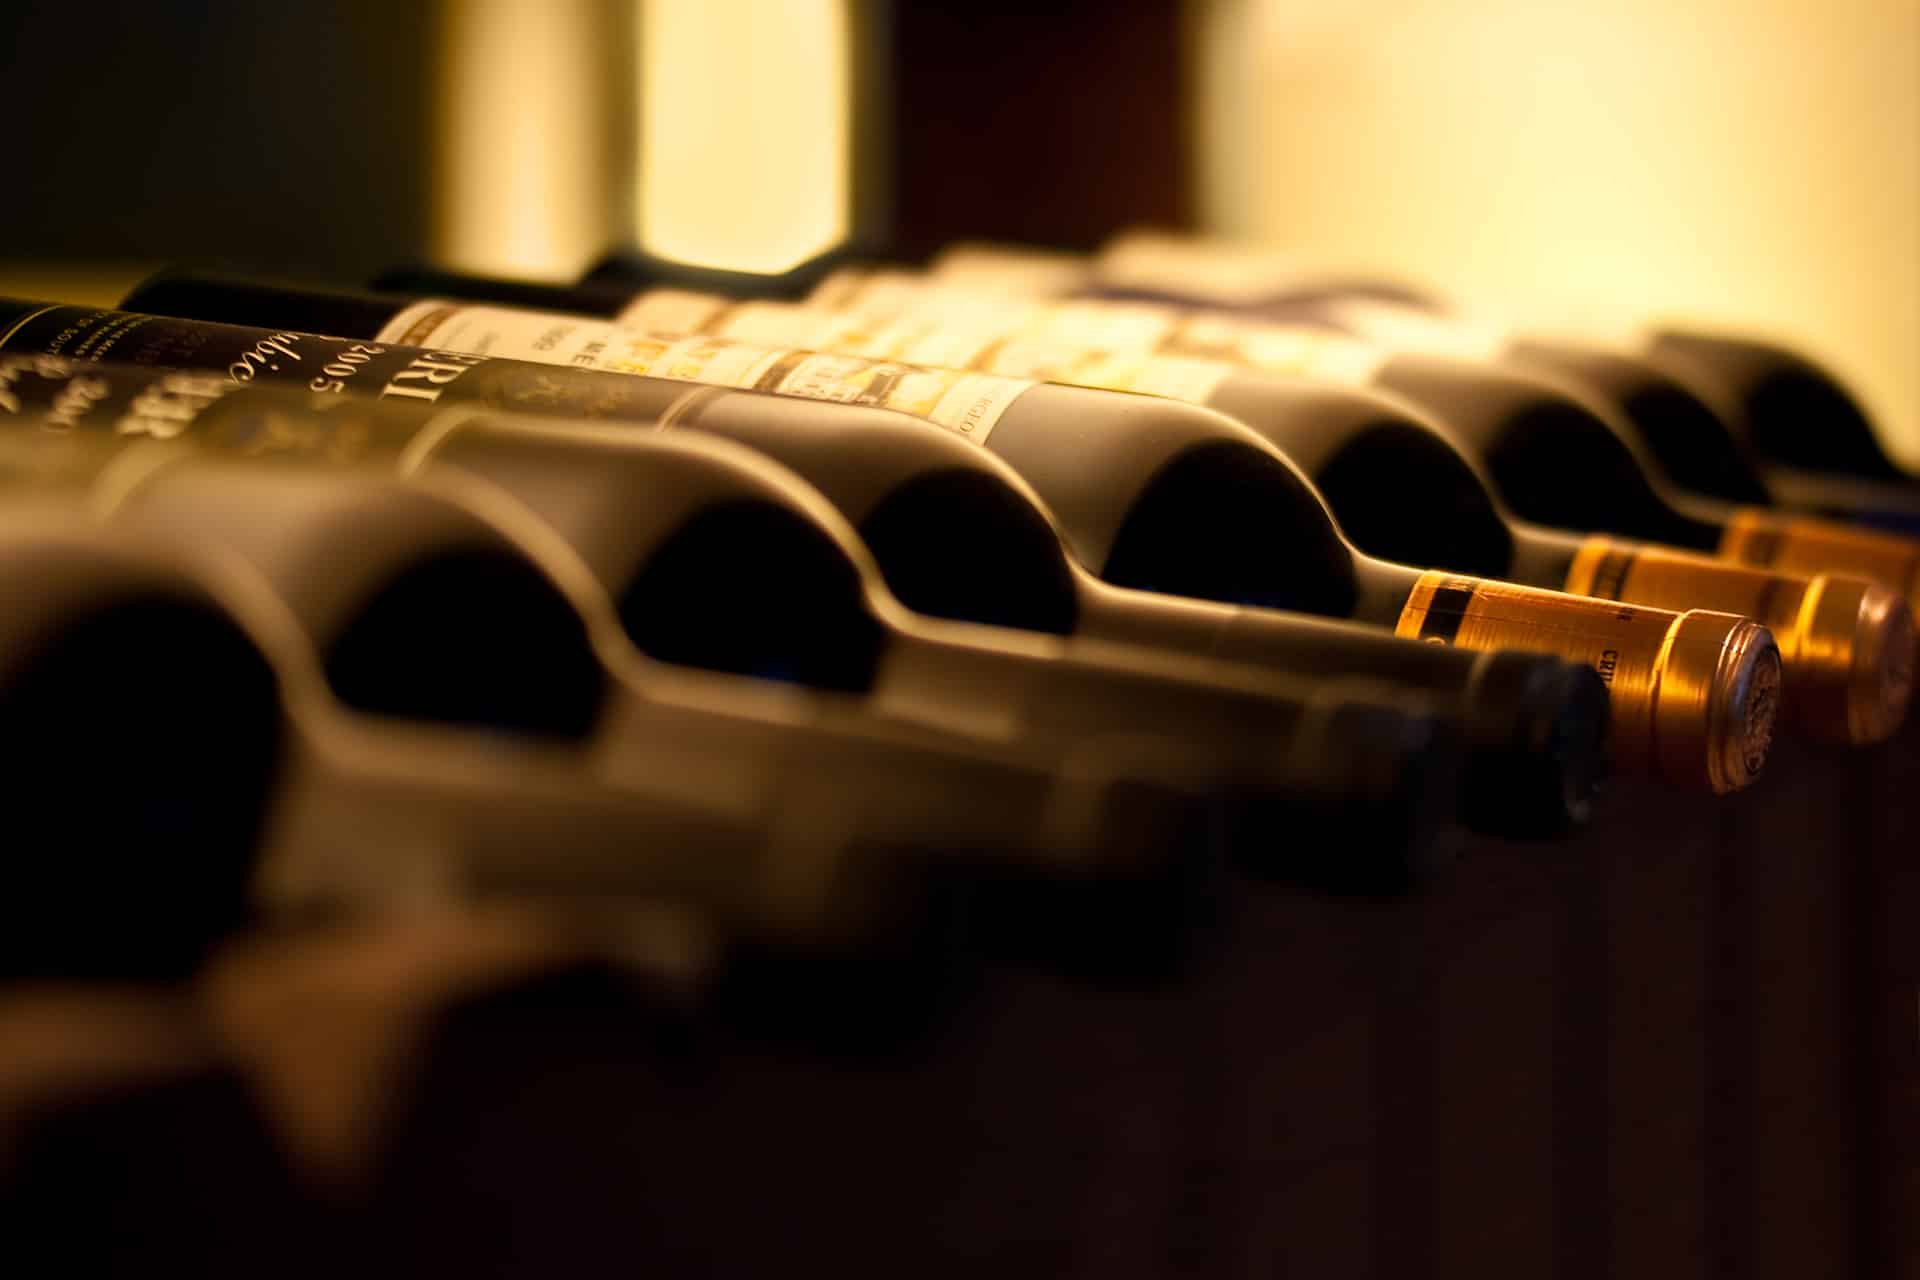 bouteilles de vin alignées les unes à côté des autres